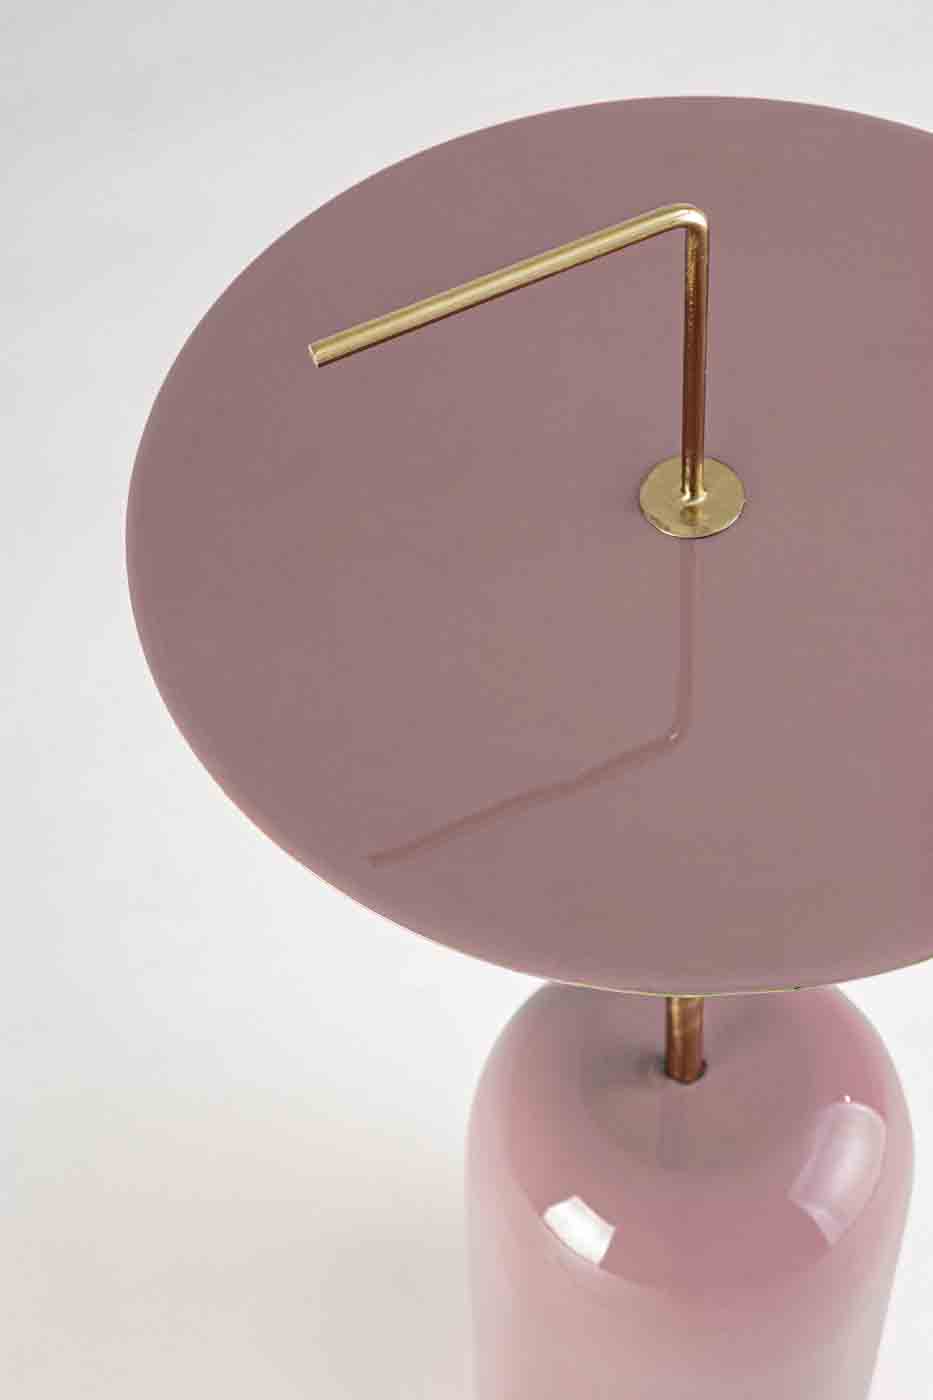 Beistelltisch Tulasi in einem modernen Design. Gefertigt aus lackiertem Metall in einem rosa Farbton. Marke Bizotto.